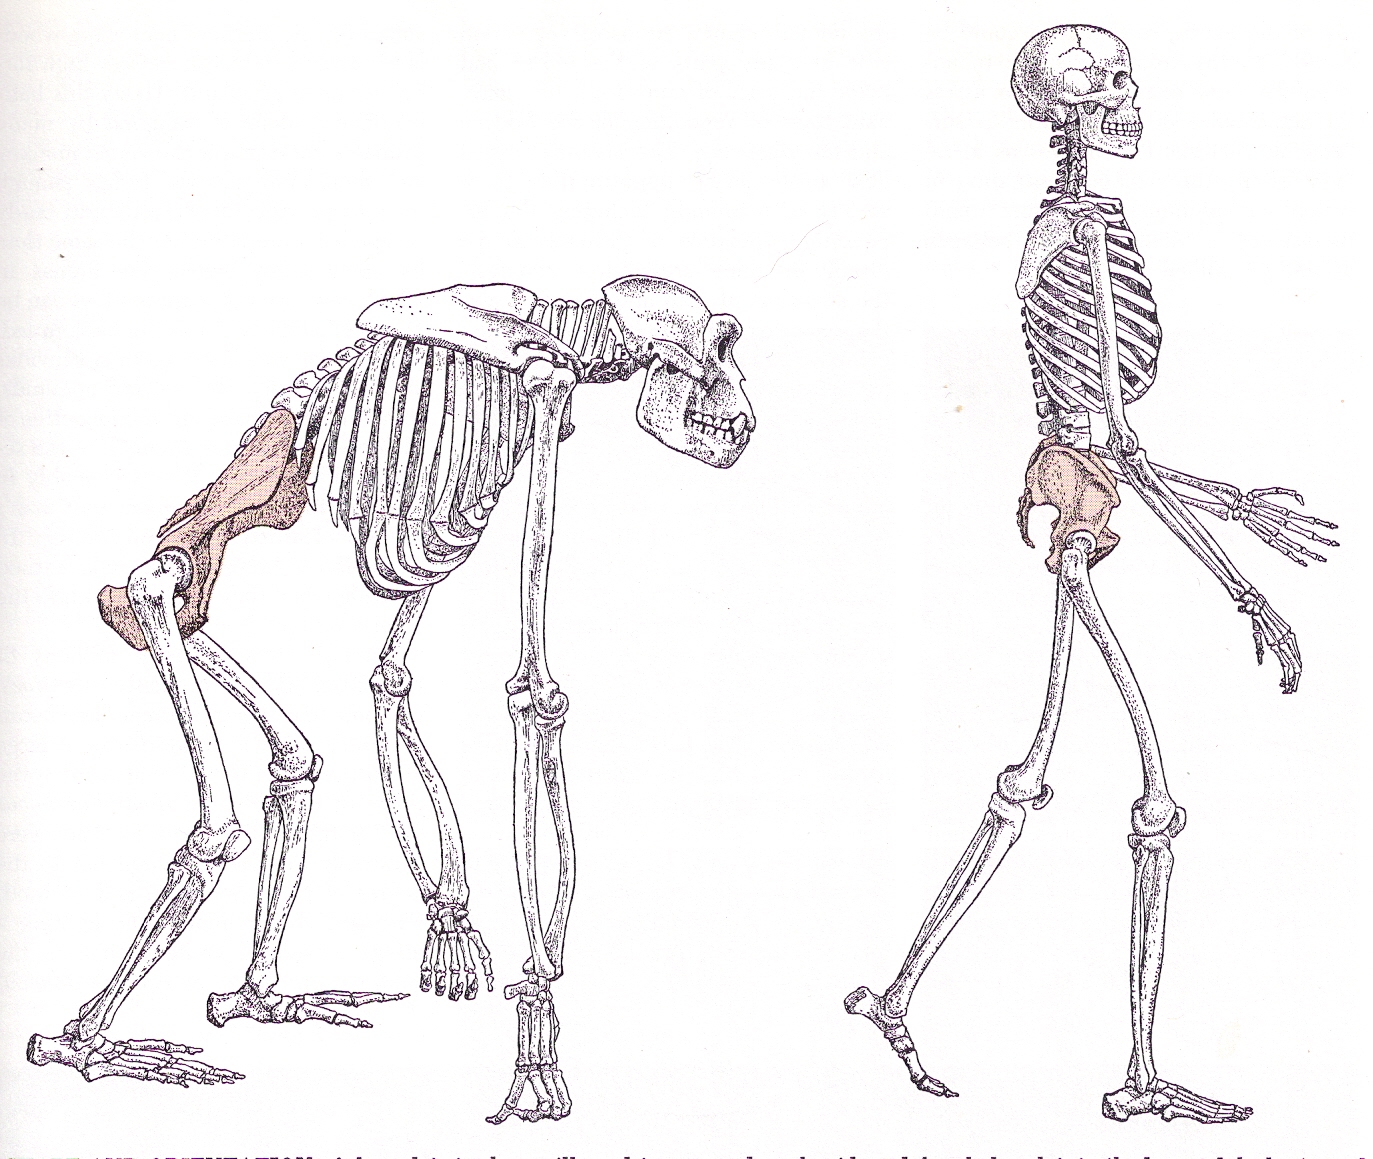 Отличие скелета человека от млекопитающего